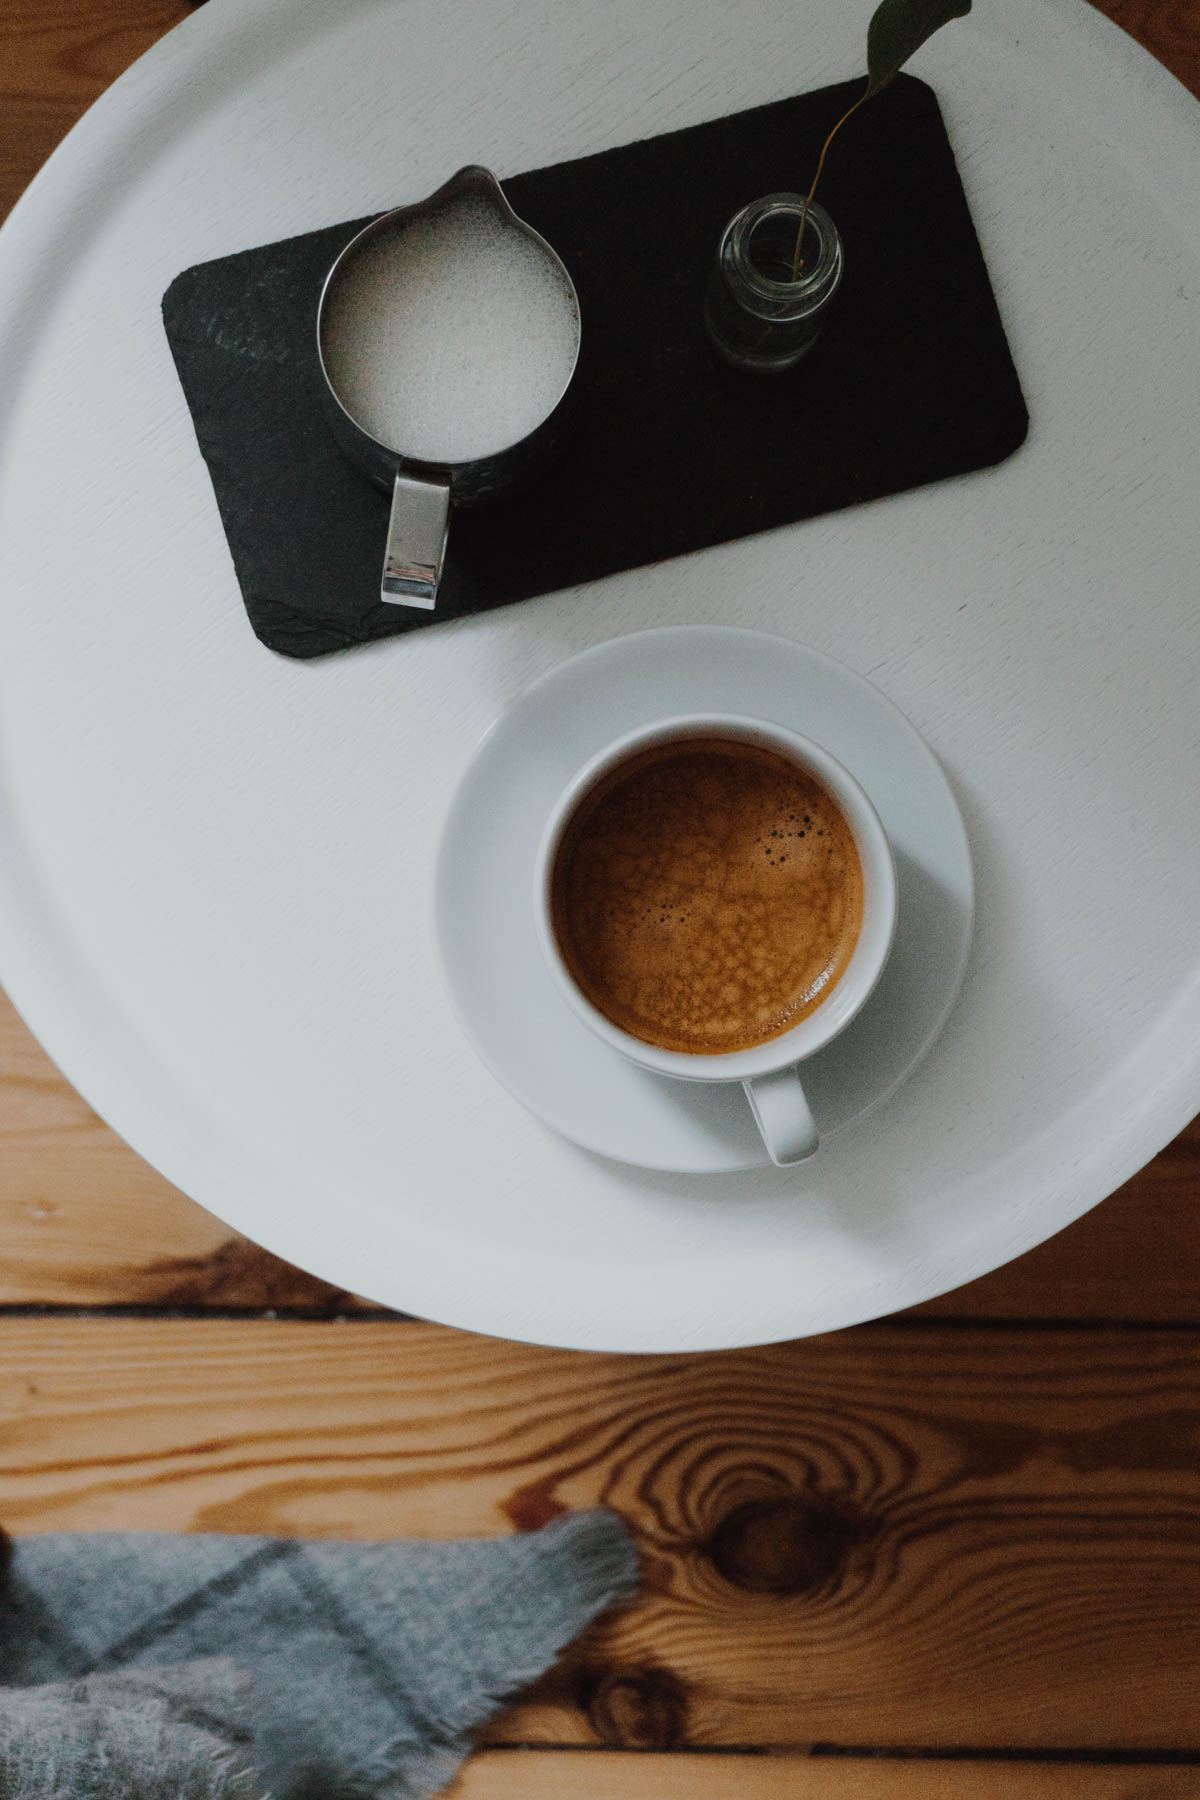 Coffee - Espresso - Cappuccino / Home Cafe, RG Daily Blog